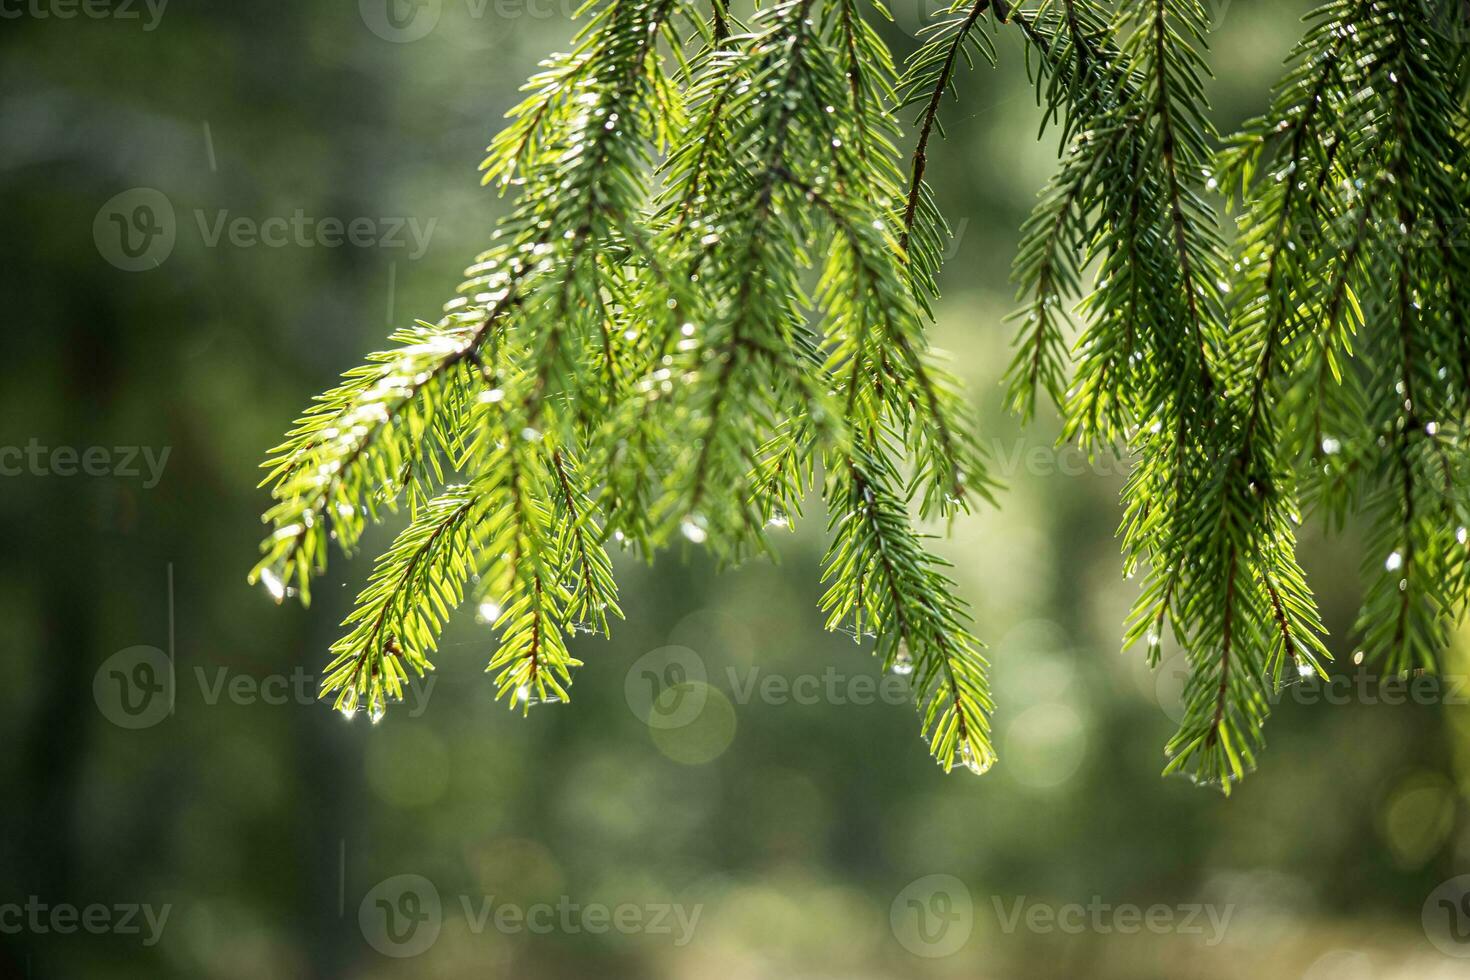 tall träd nålar i solljus med regn droppar på tips och synlig regn faller runt om hängande tall träd gren på suddigt grön bakgrund foto